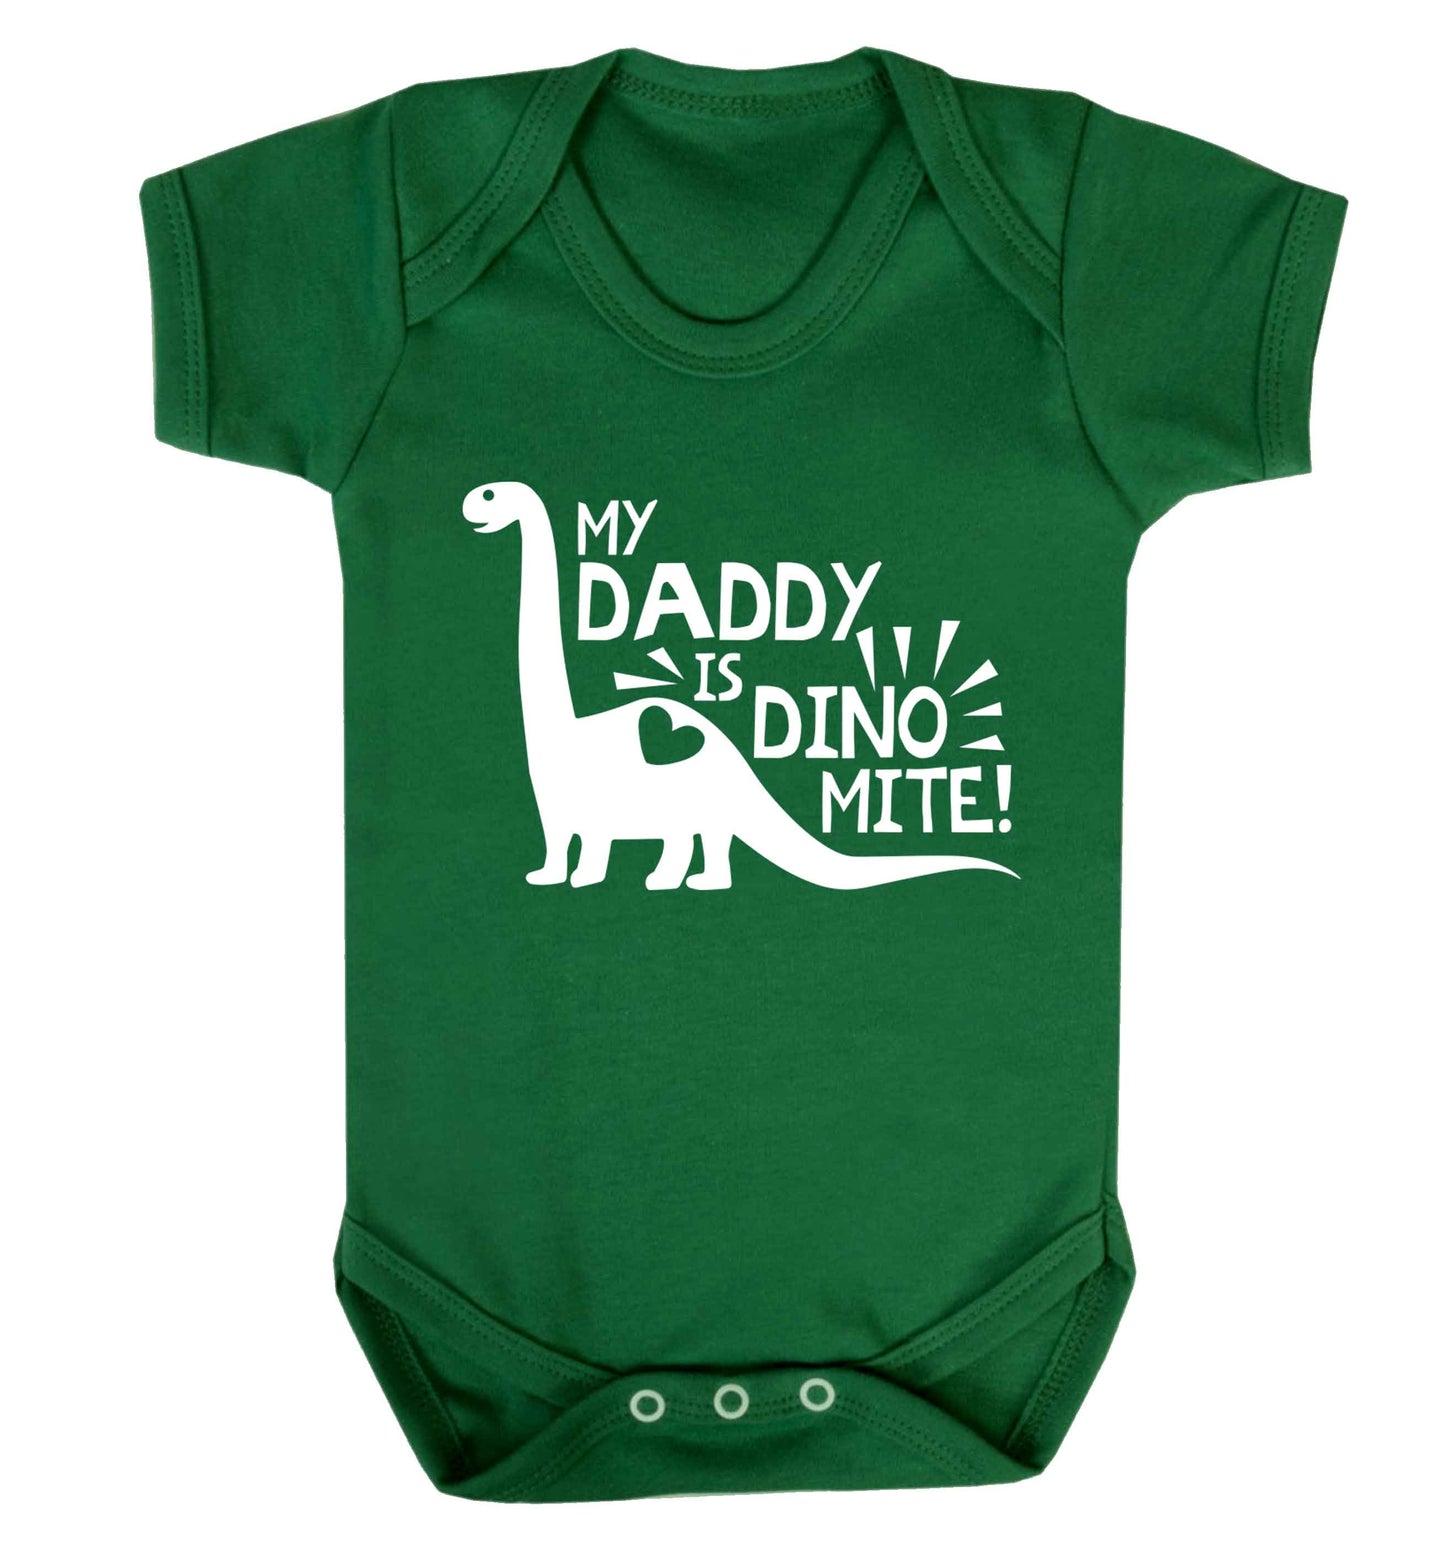 My daddy is dinomite! Baby Vest green 18-24 months